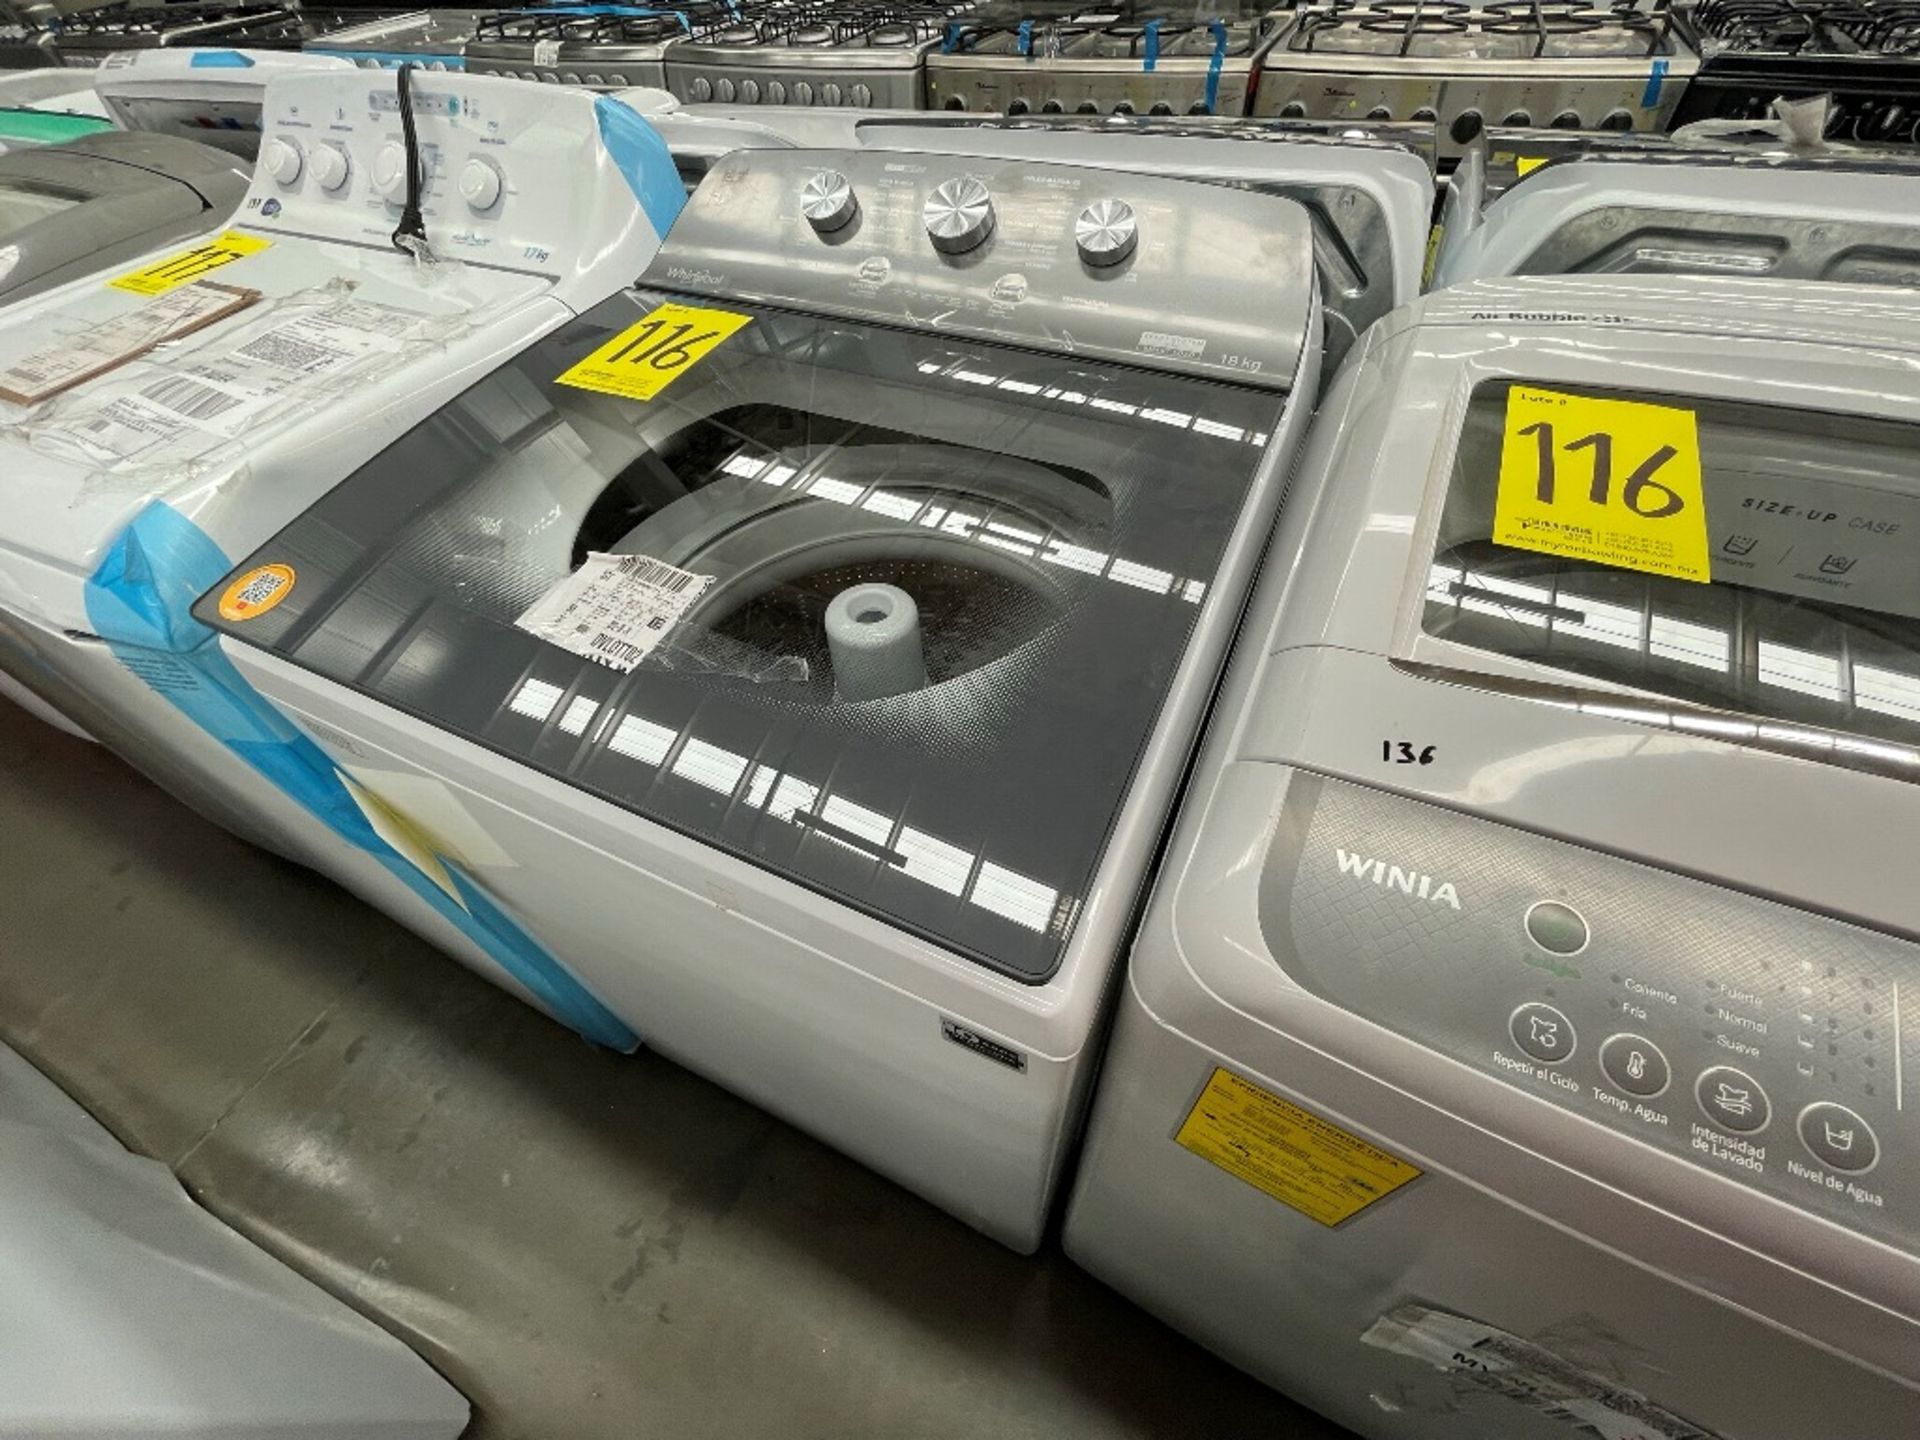 Lote de 2 Lavadoras contiene: 1 lavadora de 19 KG, Marca WINIA, Modelo WHF19F3YY2AH, Serie 802434, - Image 2 of 10